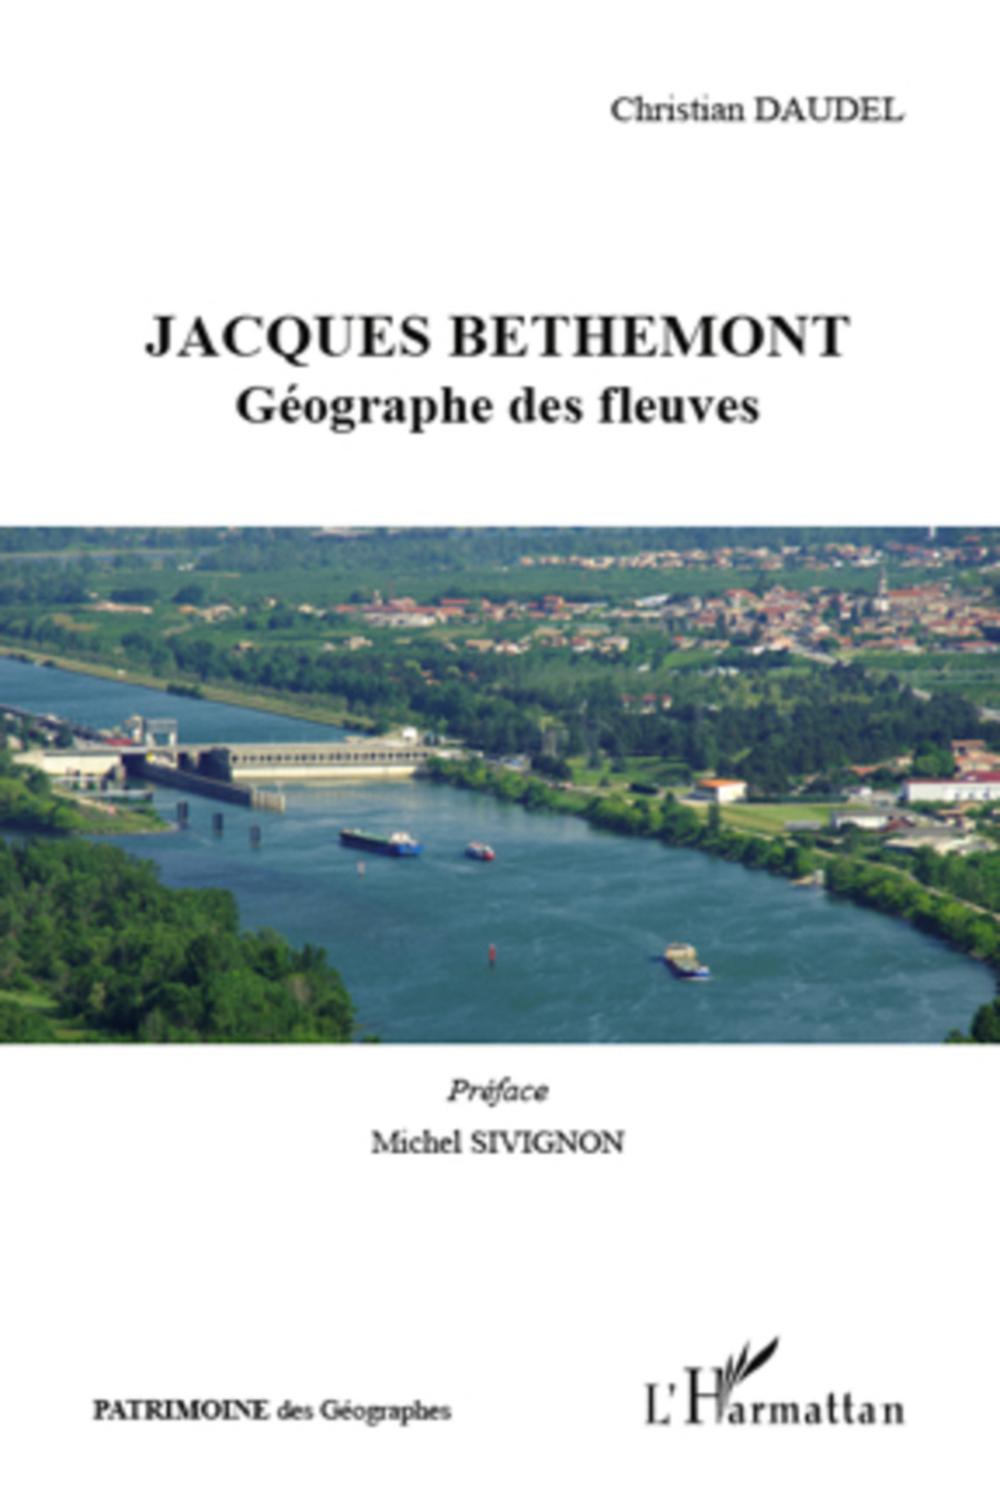 Jacques Bethemont - Christian Daudel